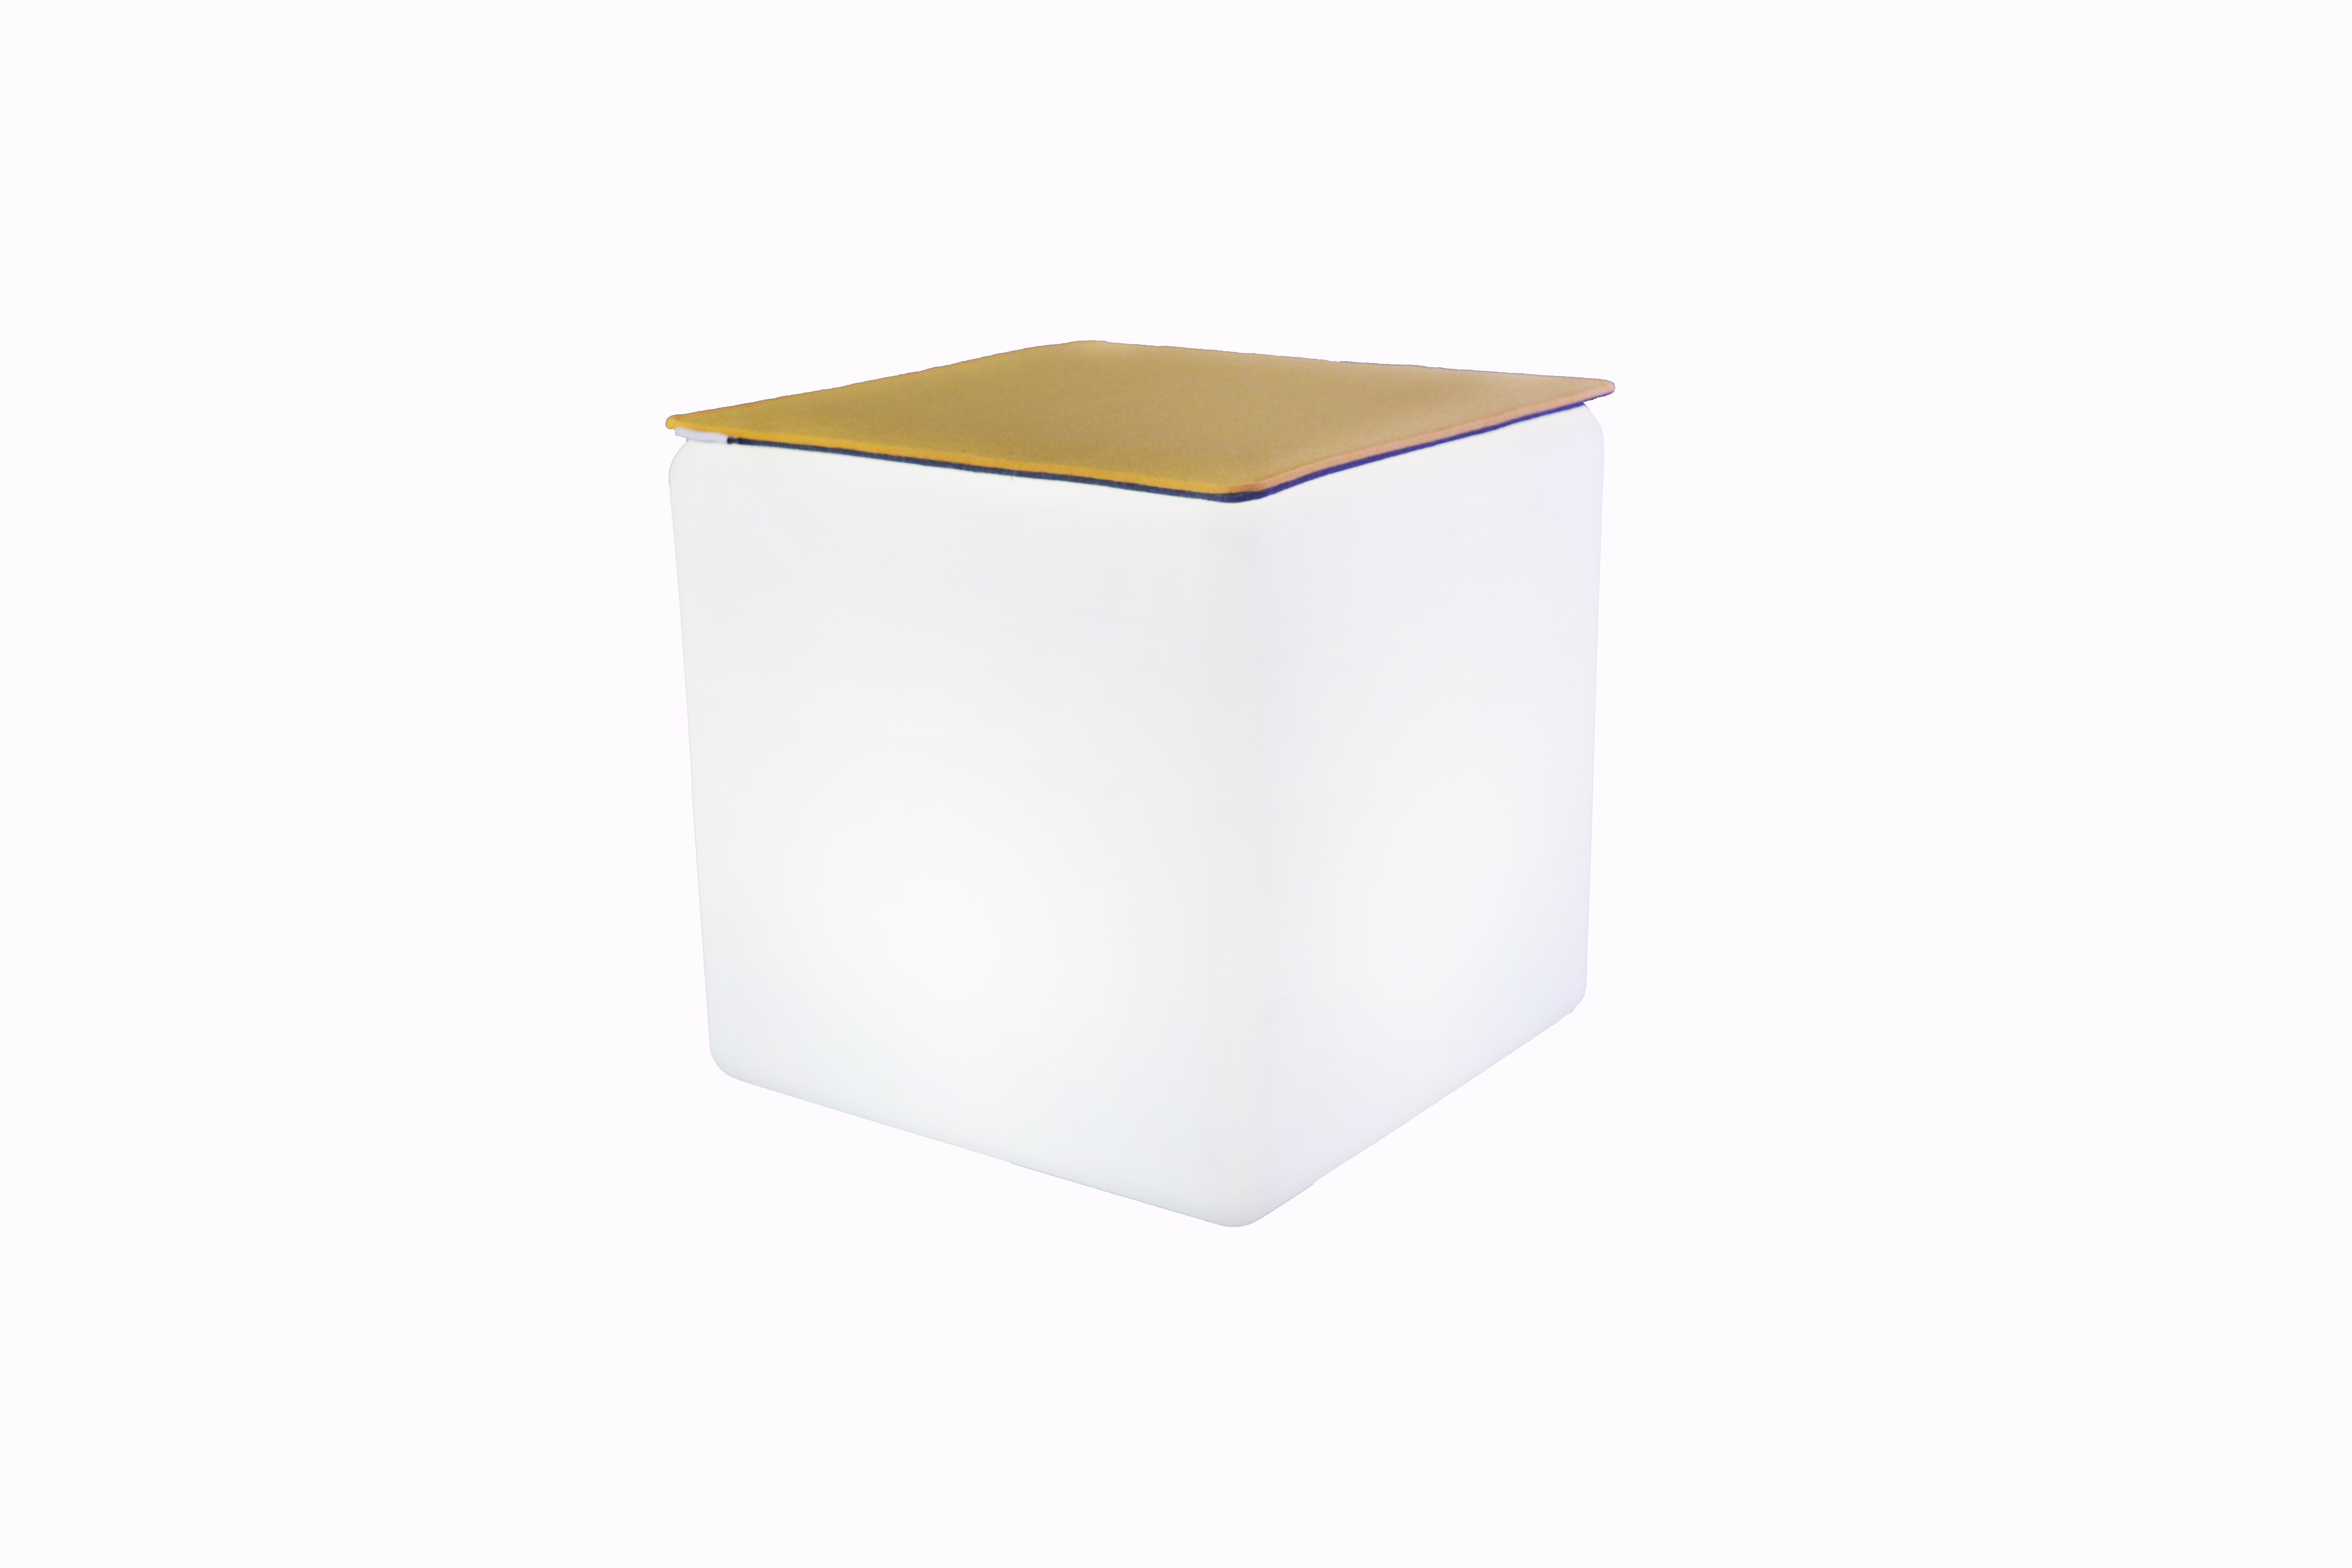 Filz x für cm Hocker Cube Auflage z.B. 30 FIlzauflage 7EVEN Beidseitig - 4mm/4mm Gelb/Grau 30